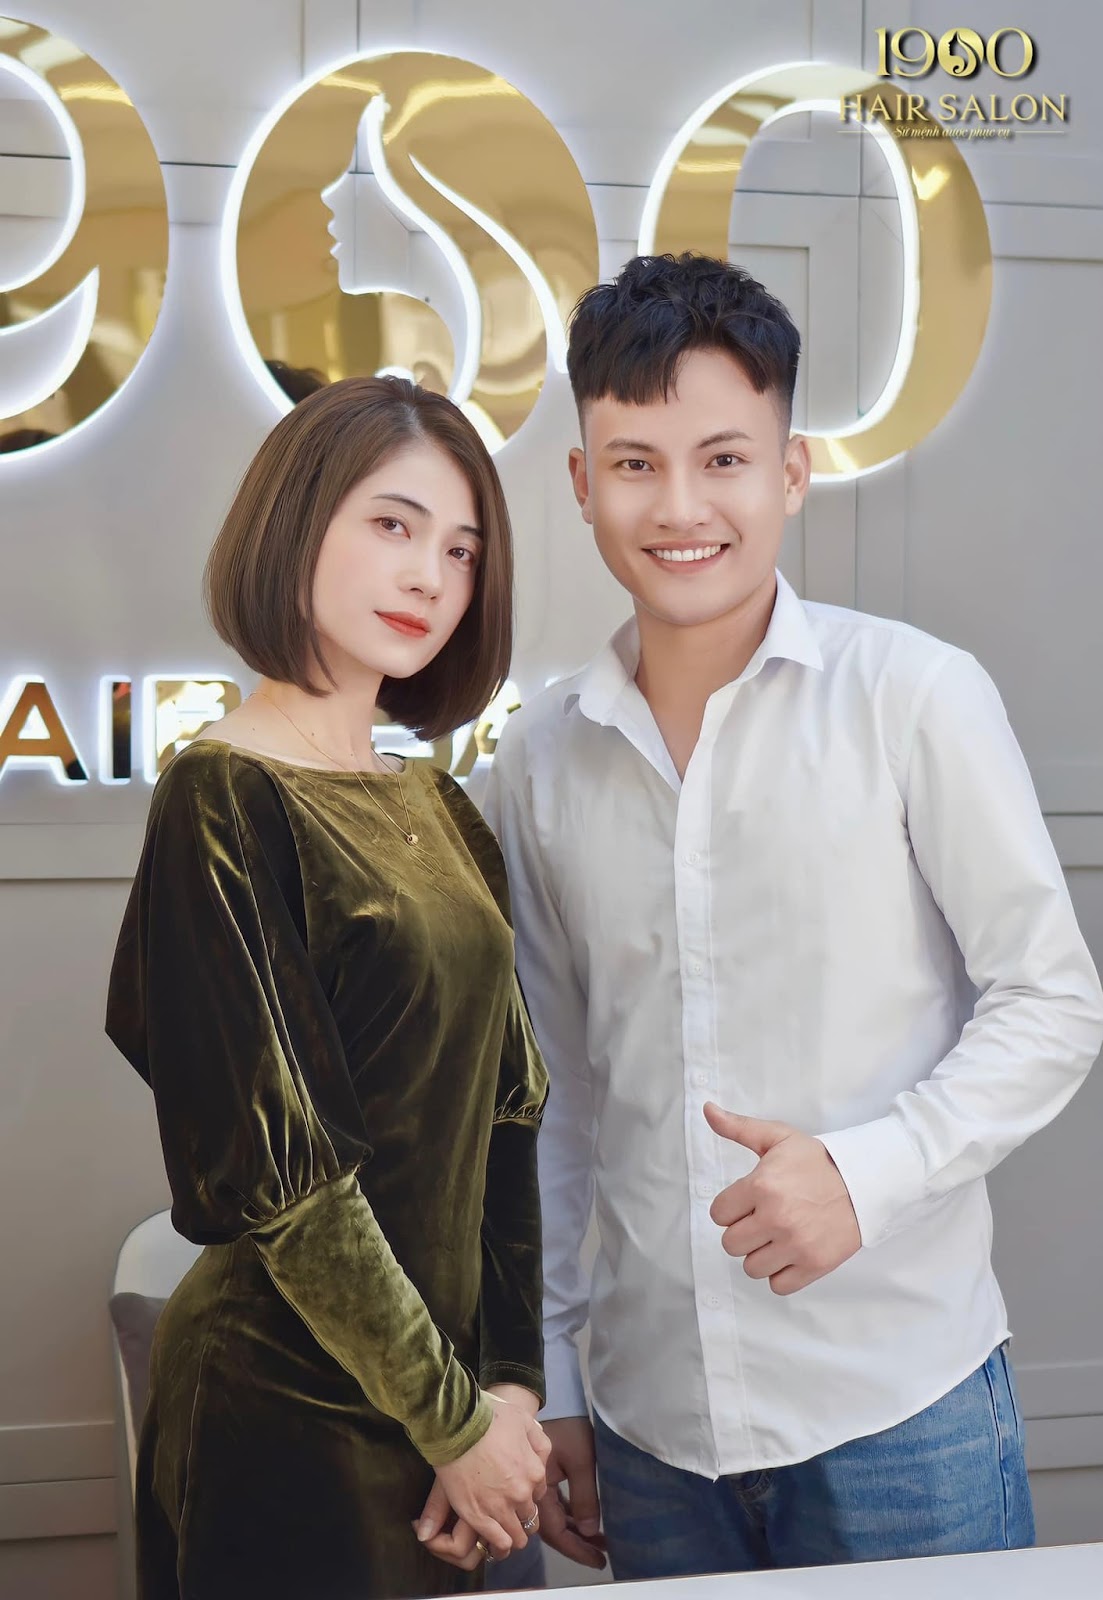 Co-founder Nguyễn Văn Trung chia sẻ văn hóa linh hoạt trong điều hành 1900 Hair Salon - 2